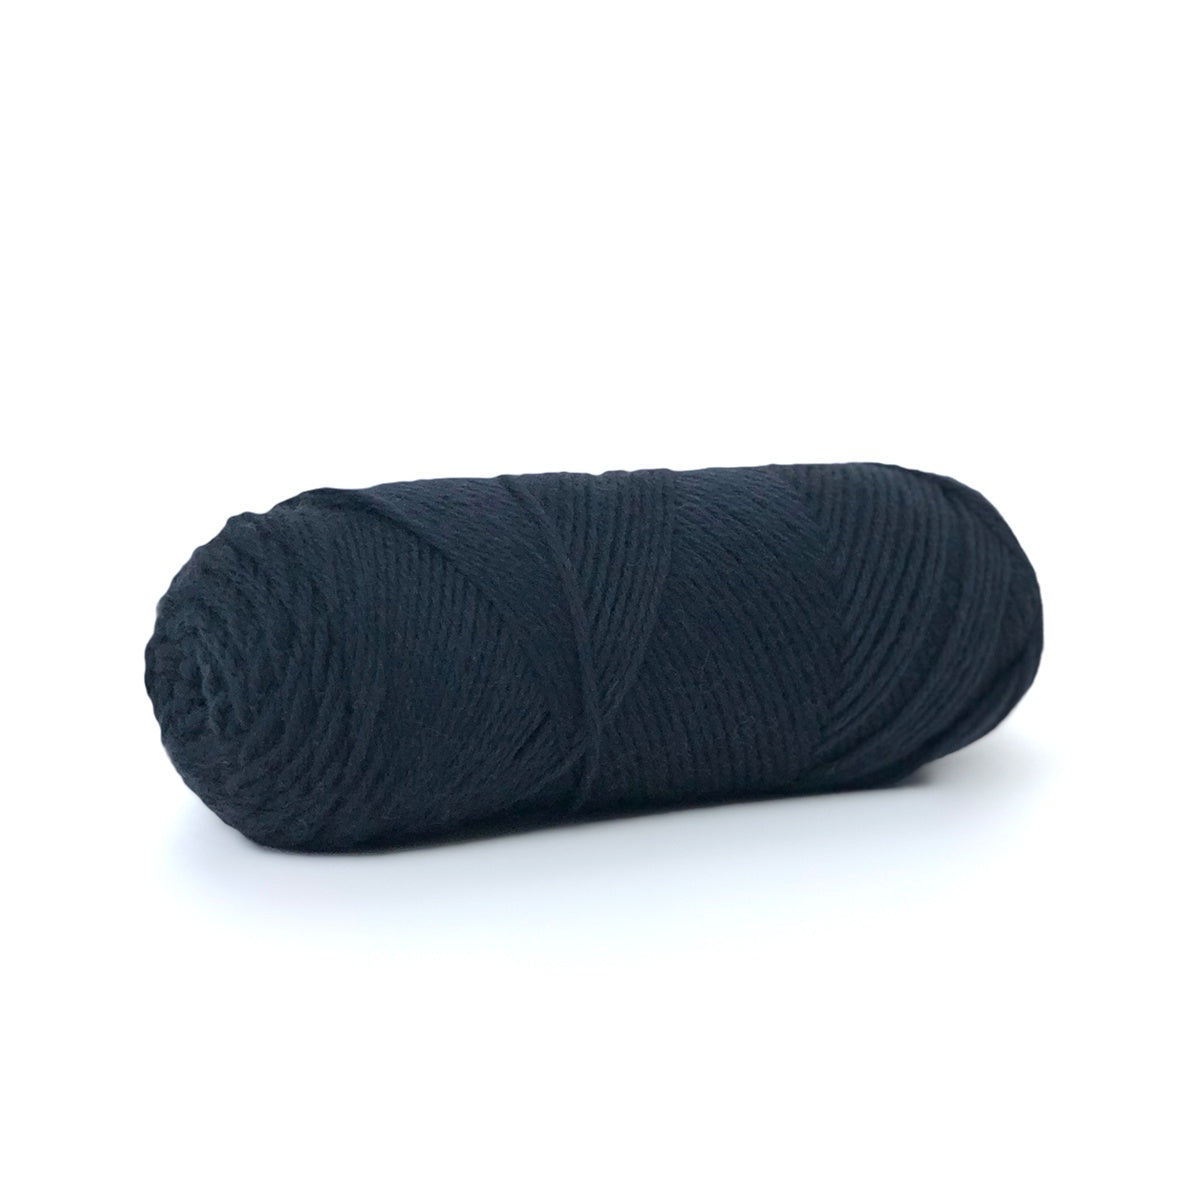 Sille Slipover Kit, Size 6-8 (Black)